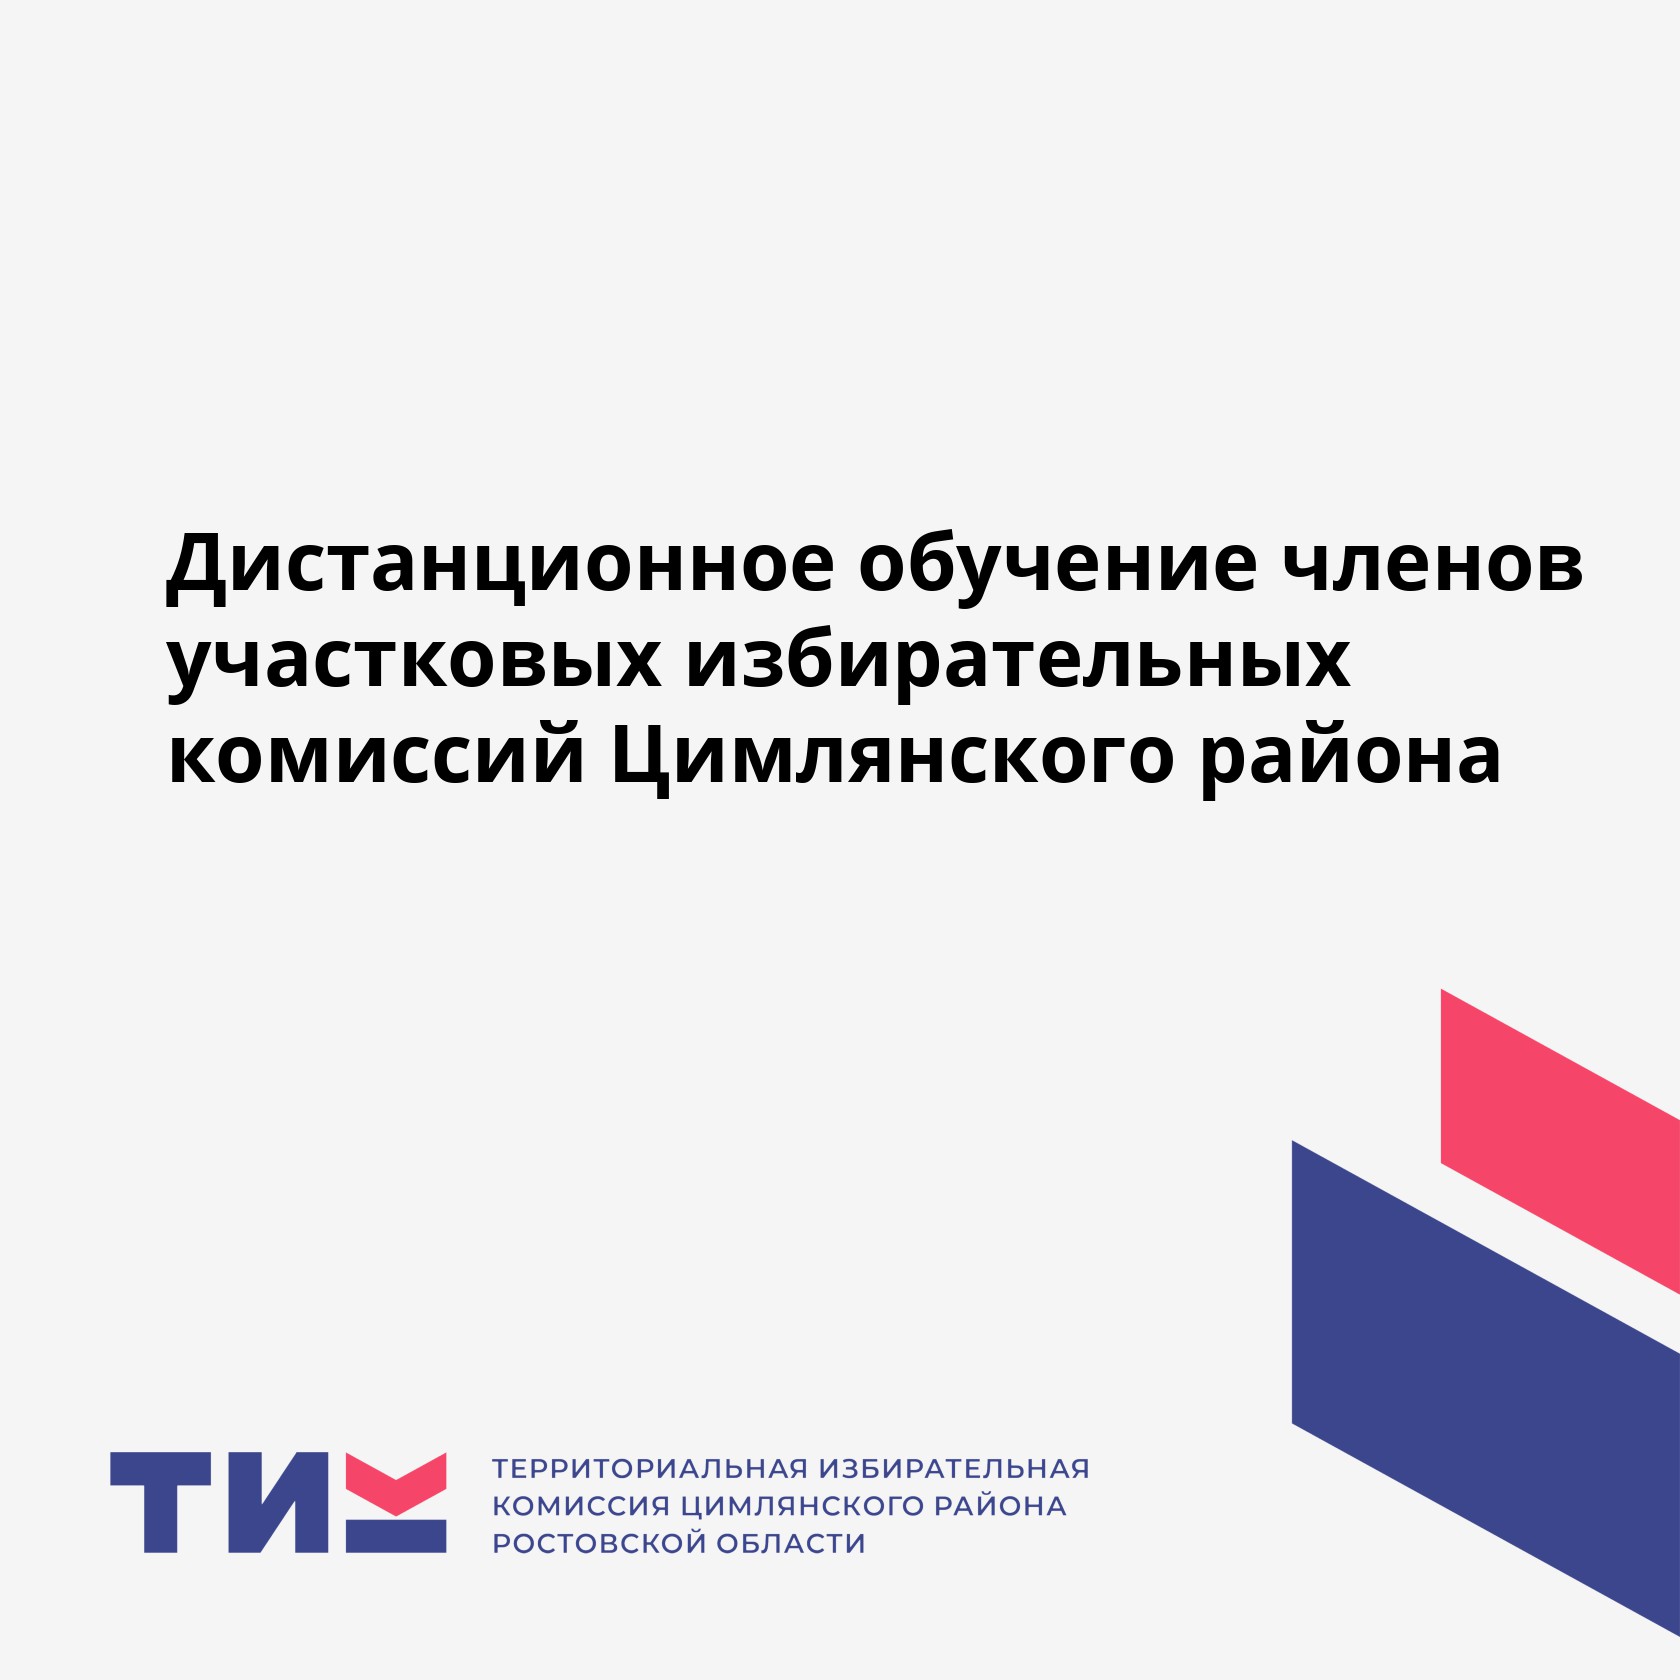 Дистанционное обучение членов участковых избирательных комиссий Цимлянского района